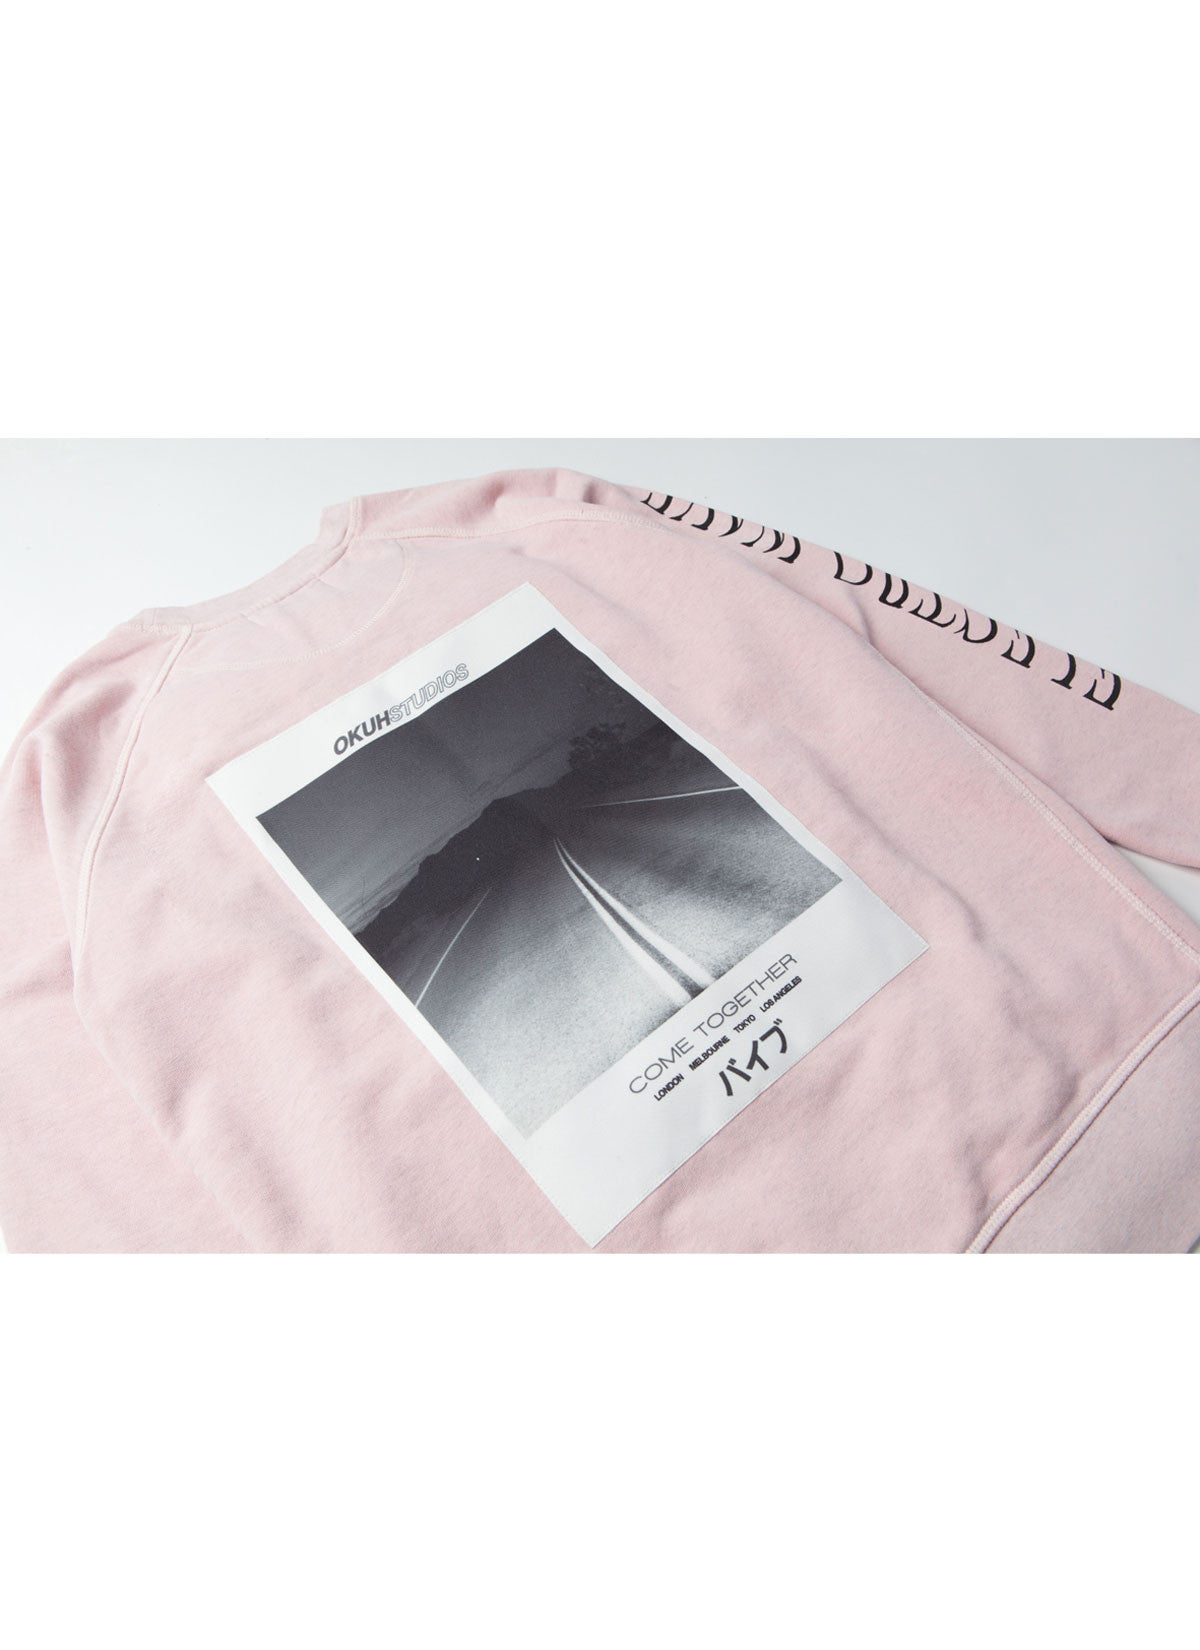 Electrowave Pink Sweatshirt - okuhstudios